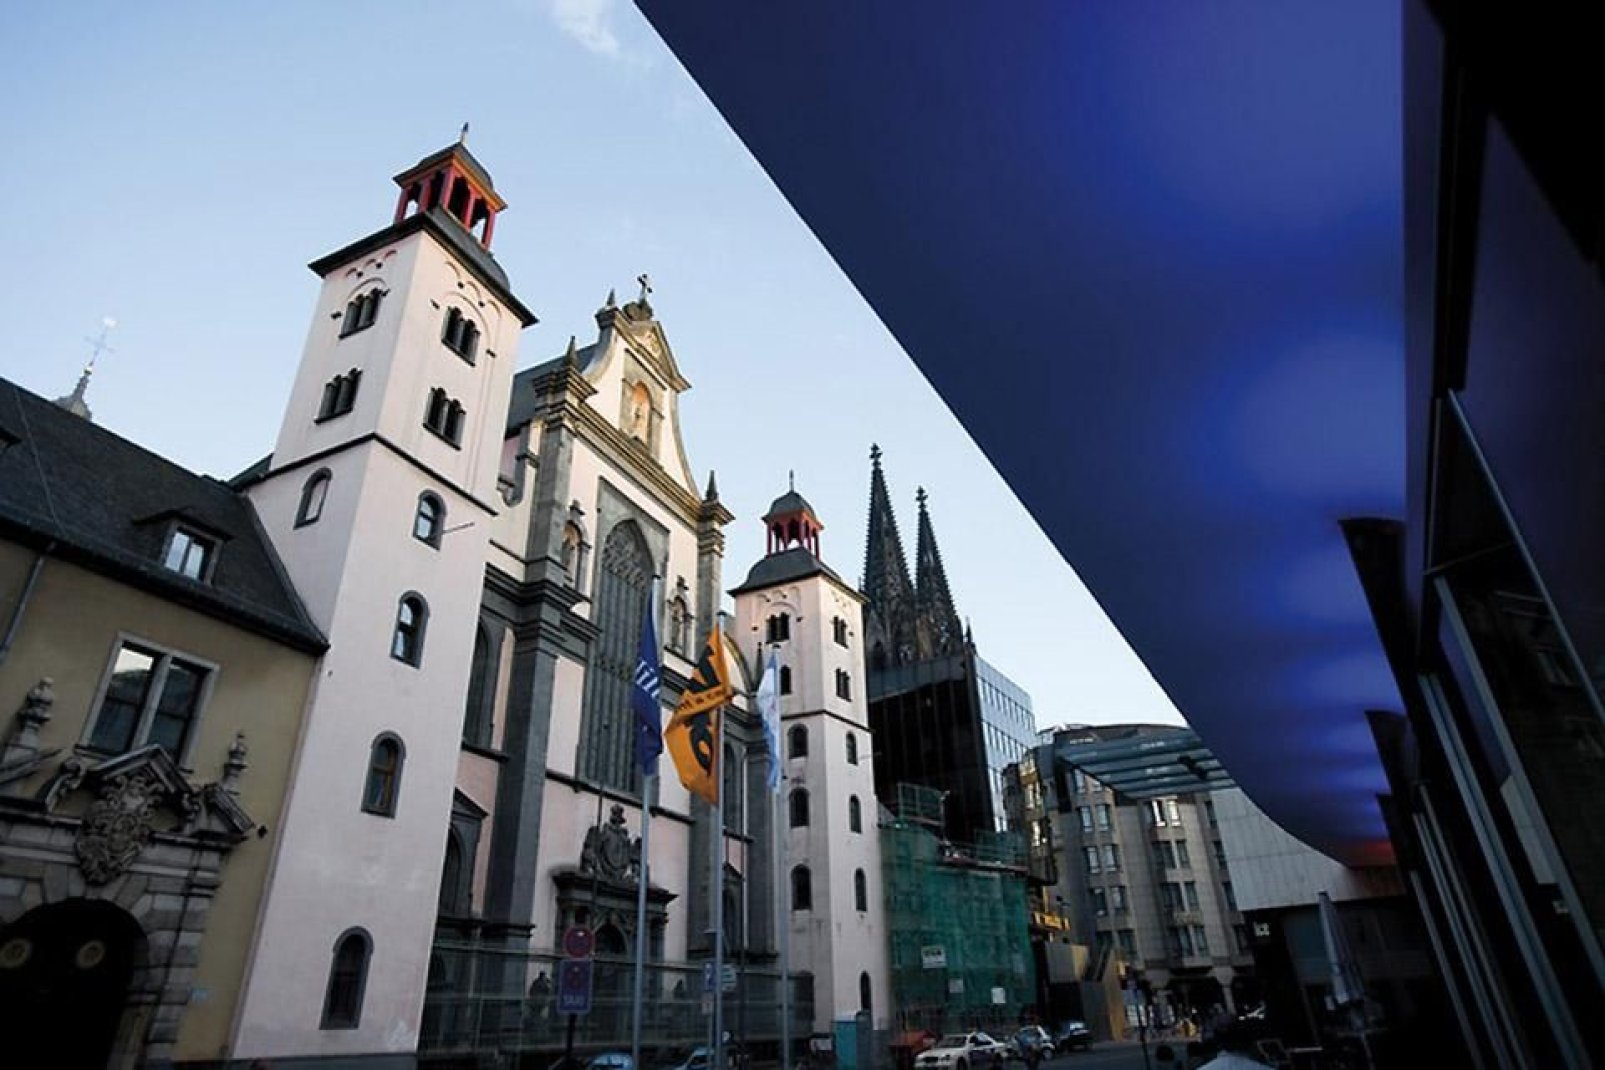 Por sus dimensiones, la catedral de Colonia puede observarse desde muchos lugares de la ciudad.